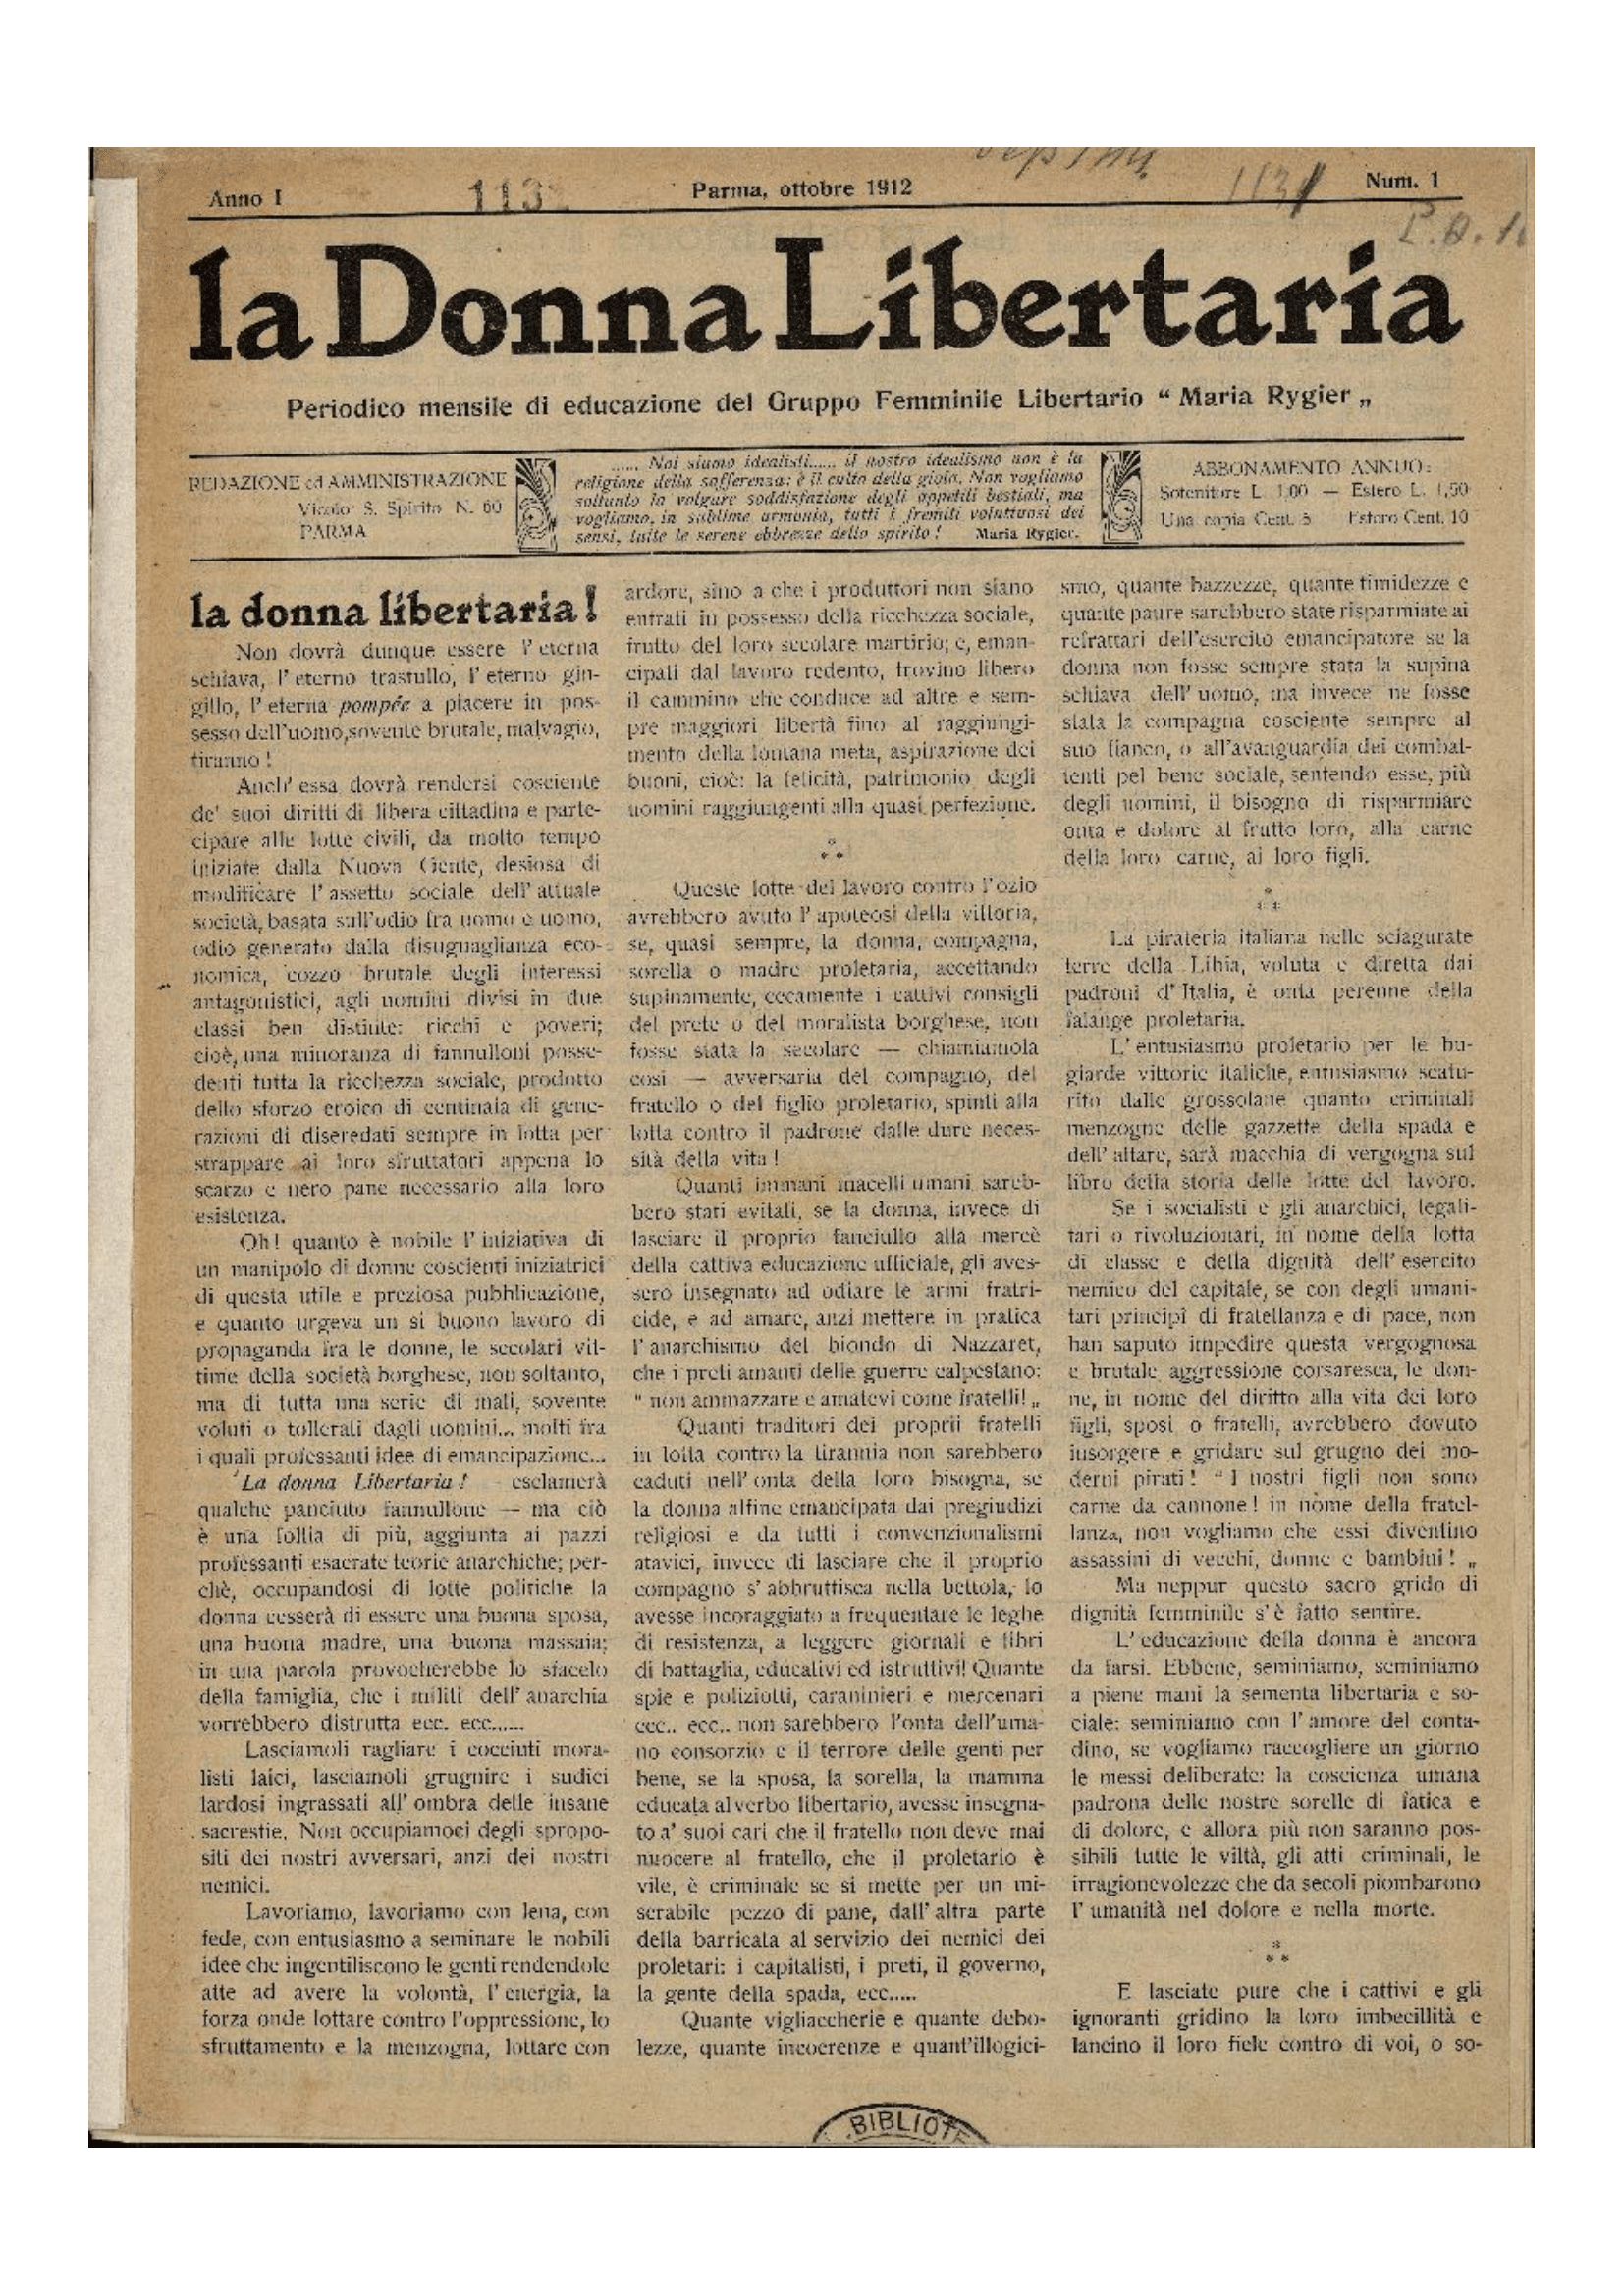 Première de couverture de La Donna libertaria, Parma, n° 1, octobre 1912 (Biblioteca Libertaria Armando Borghi, Castel Bolognese, Italie)